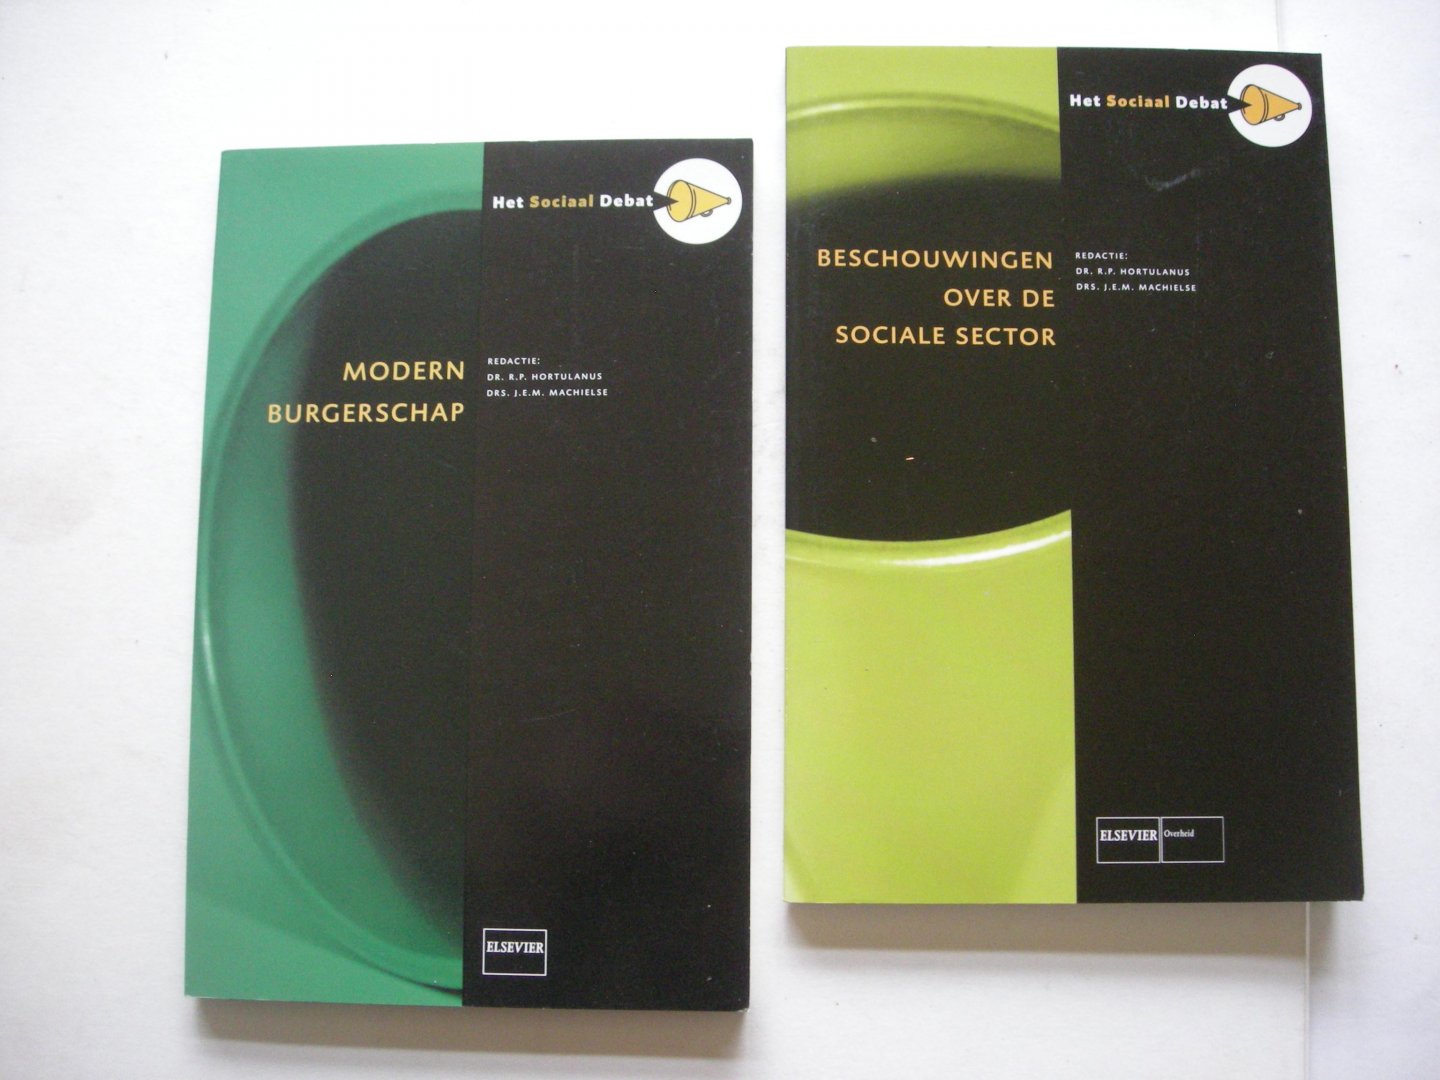 Hortulanus, R.P. / Machielse, J.E.M., red. - Beschouwingen over de sociale sector. Het Sociaal Debat deel 9